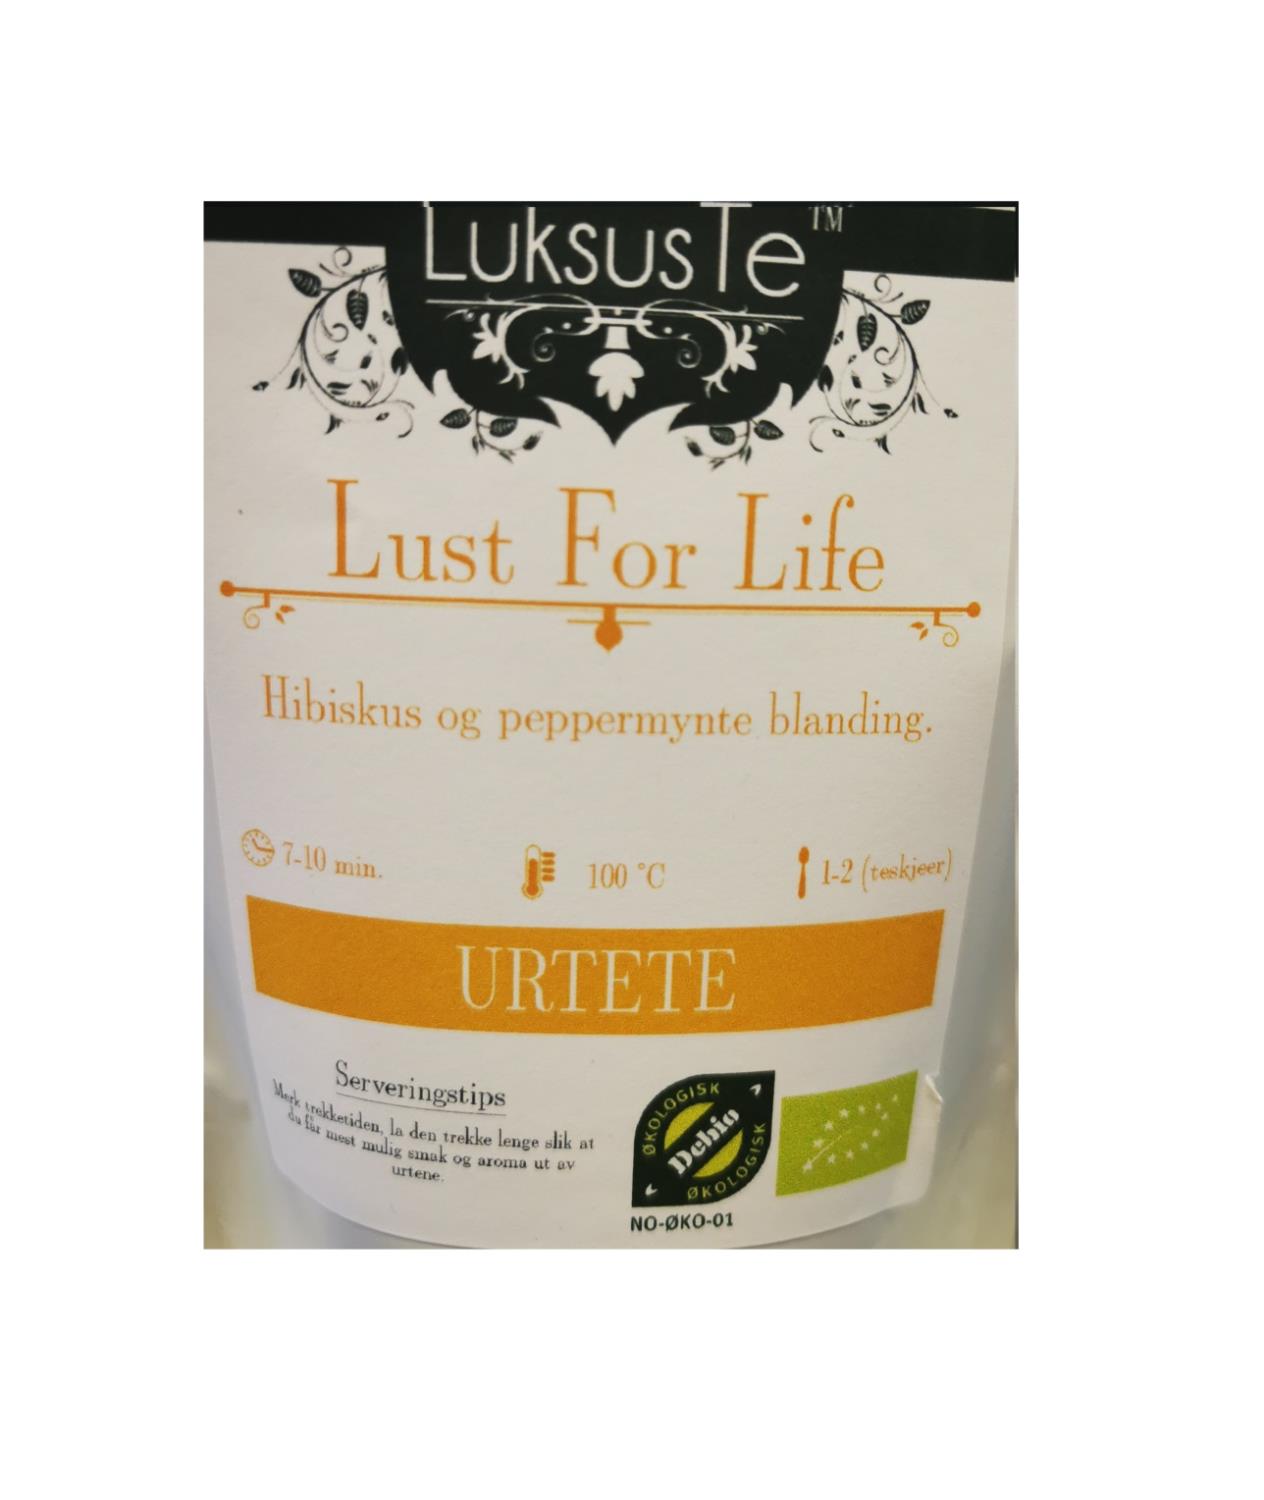 LuksusTe Lust For Life 100g